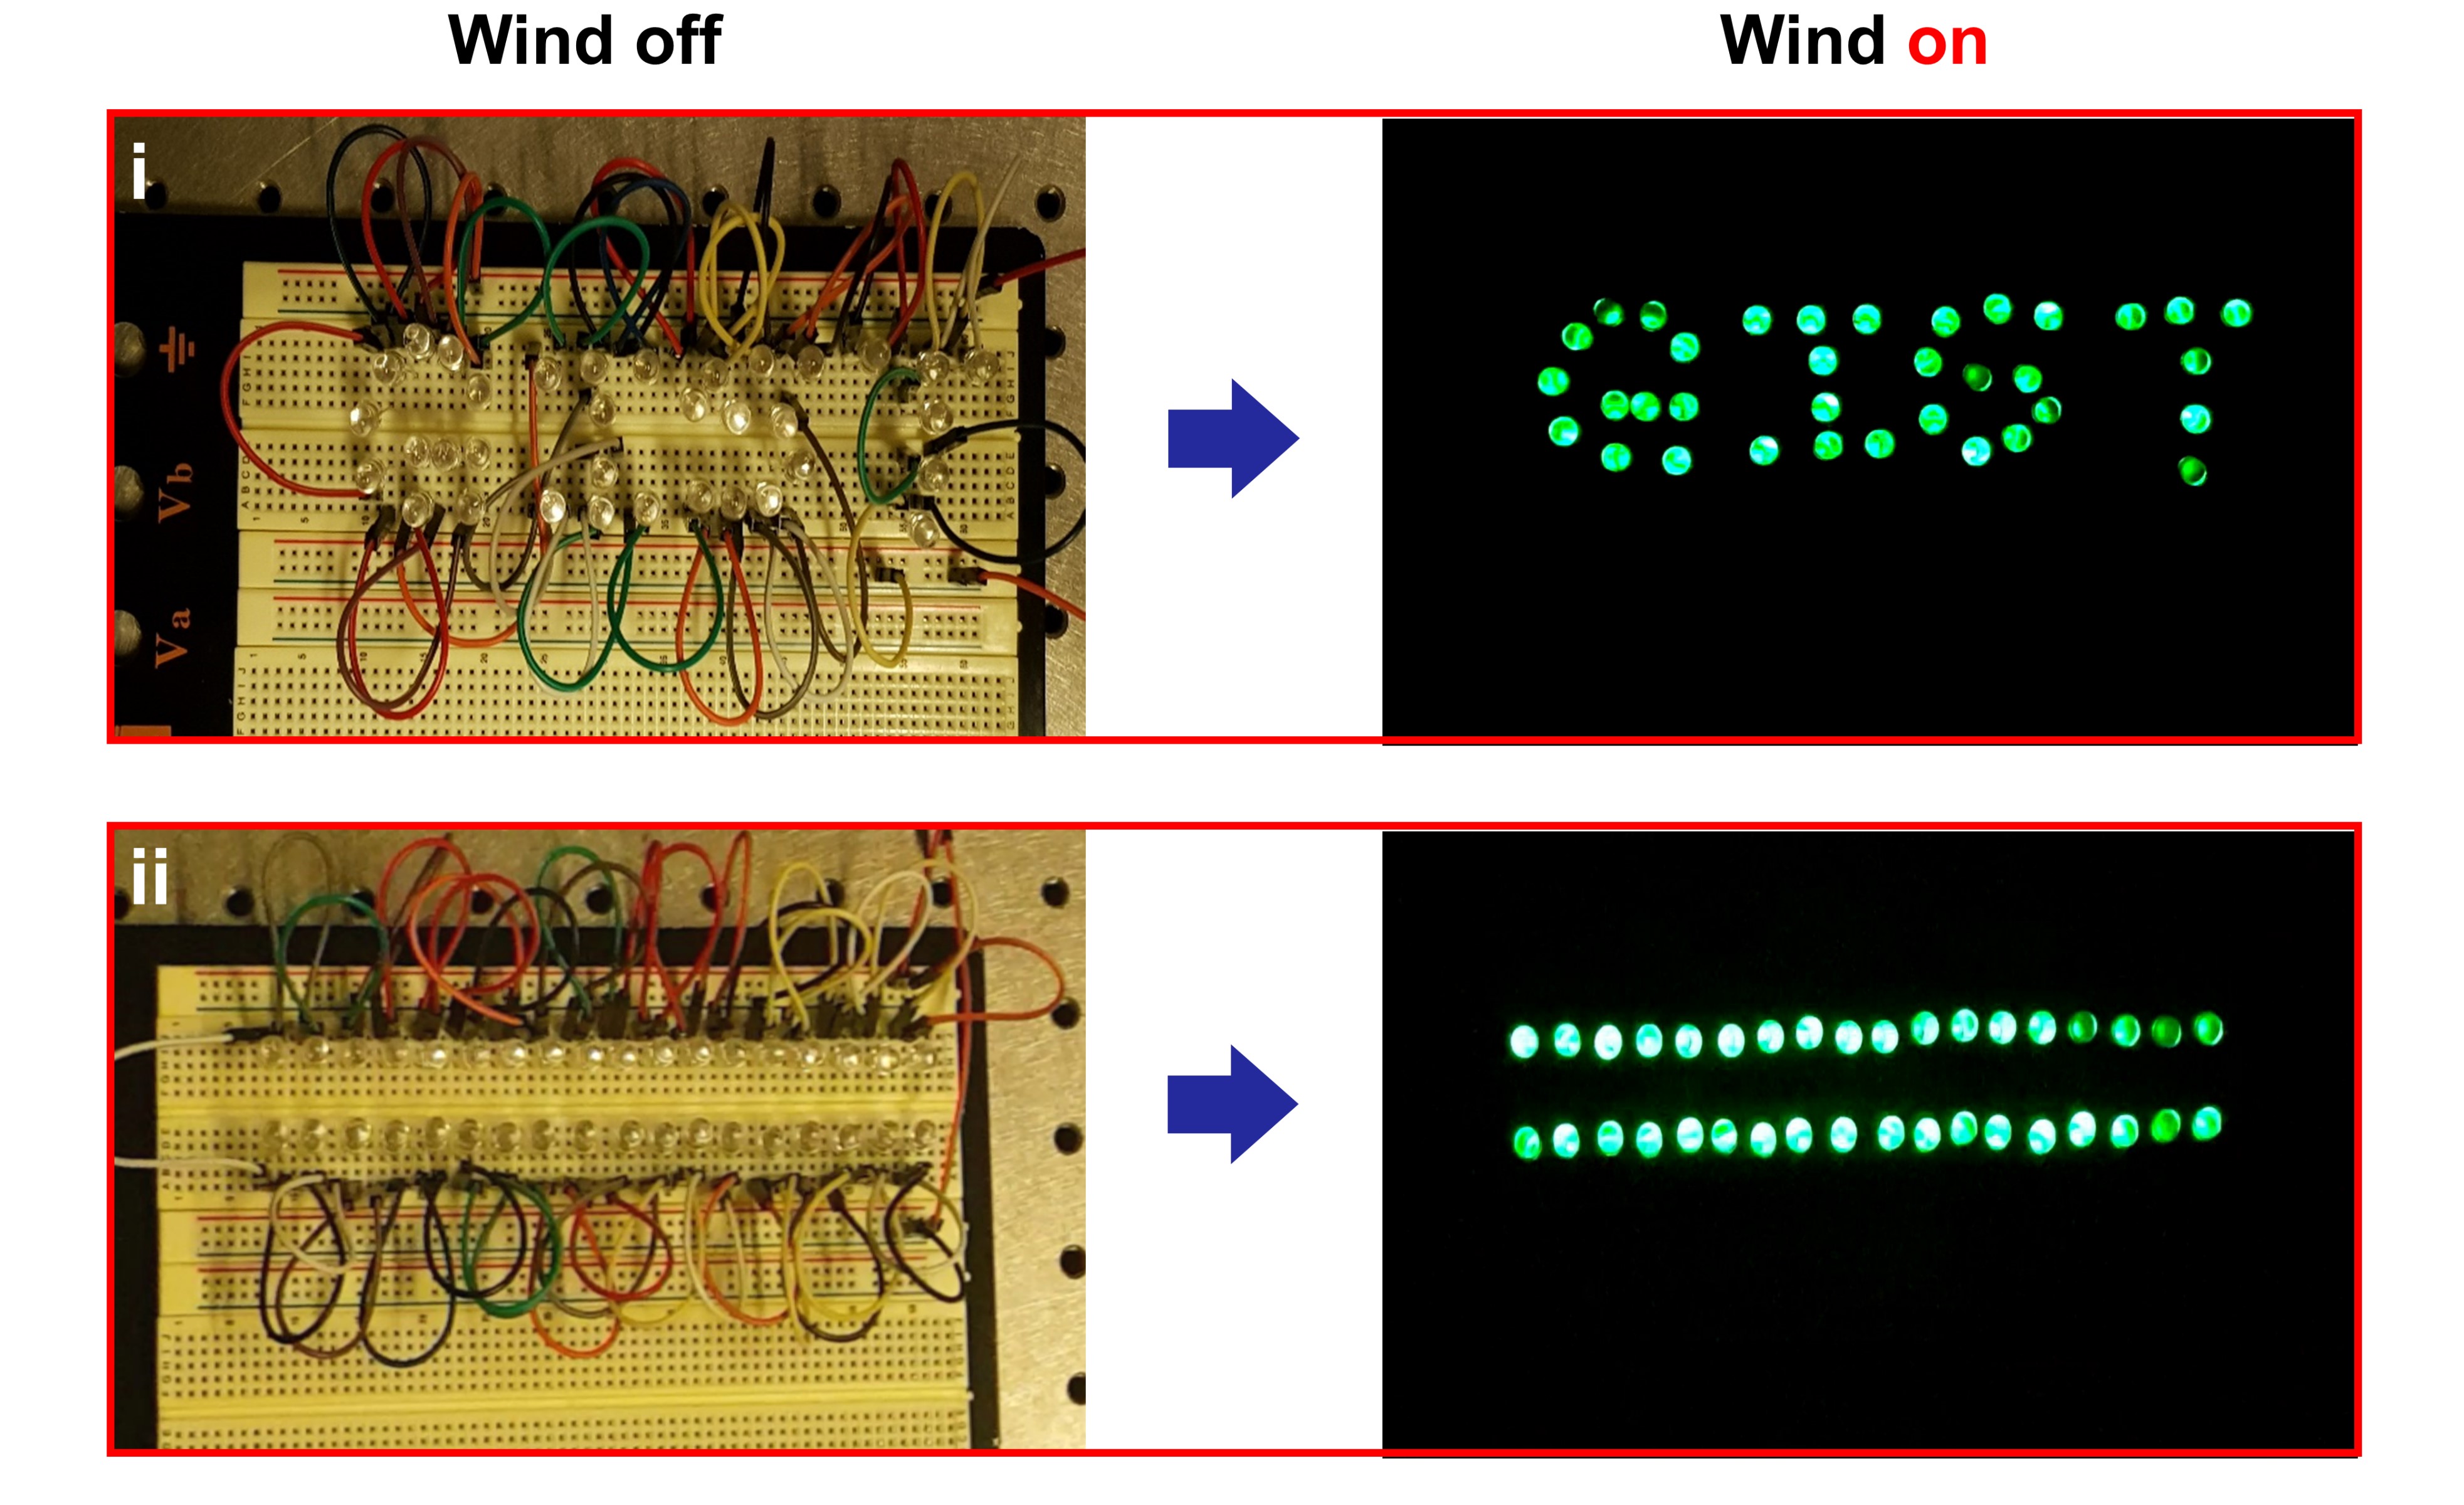 정건영 교수 연구팀, 바람 불면 불이 켜지는 마찰 전기 소자 개발 이미지